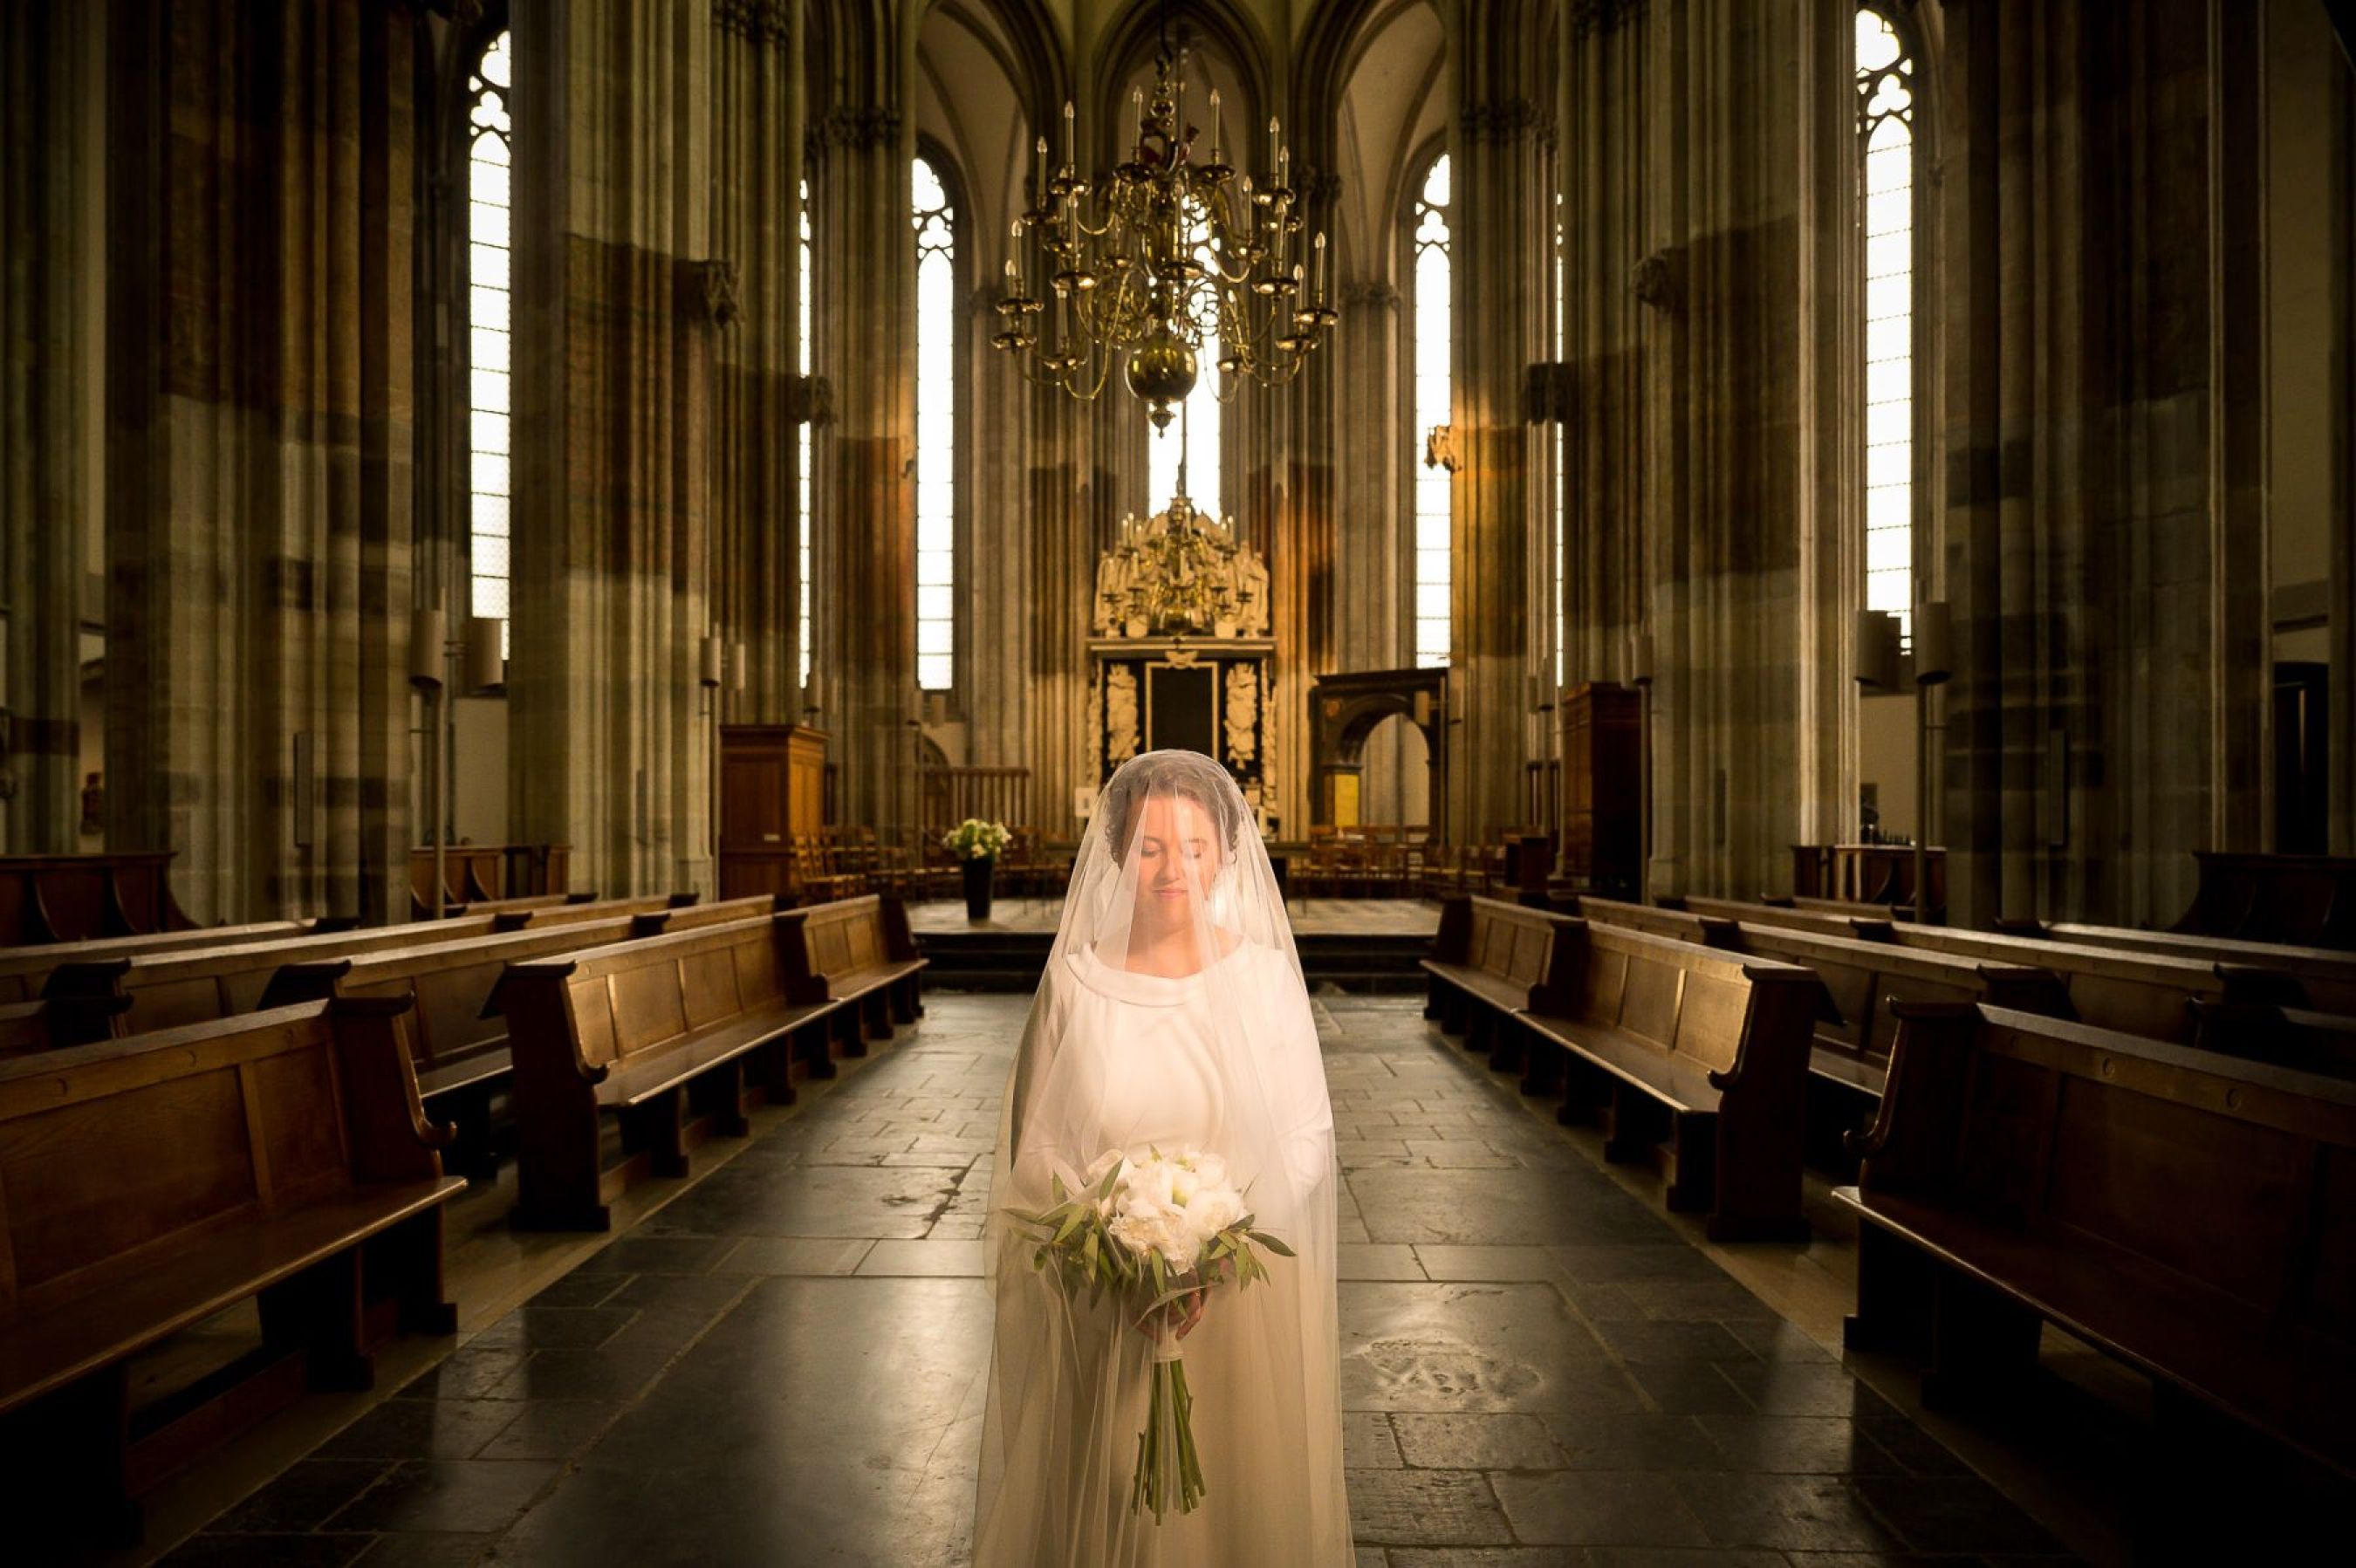 Martijn-Anne-Co-Jan-van-de-Maat-Bruidsfotografie-Trouwfotografie-Trouwen-Pandhof-Domkerk-Utrecht